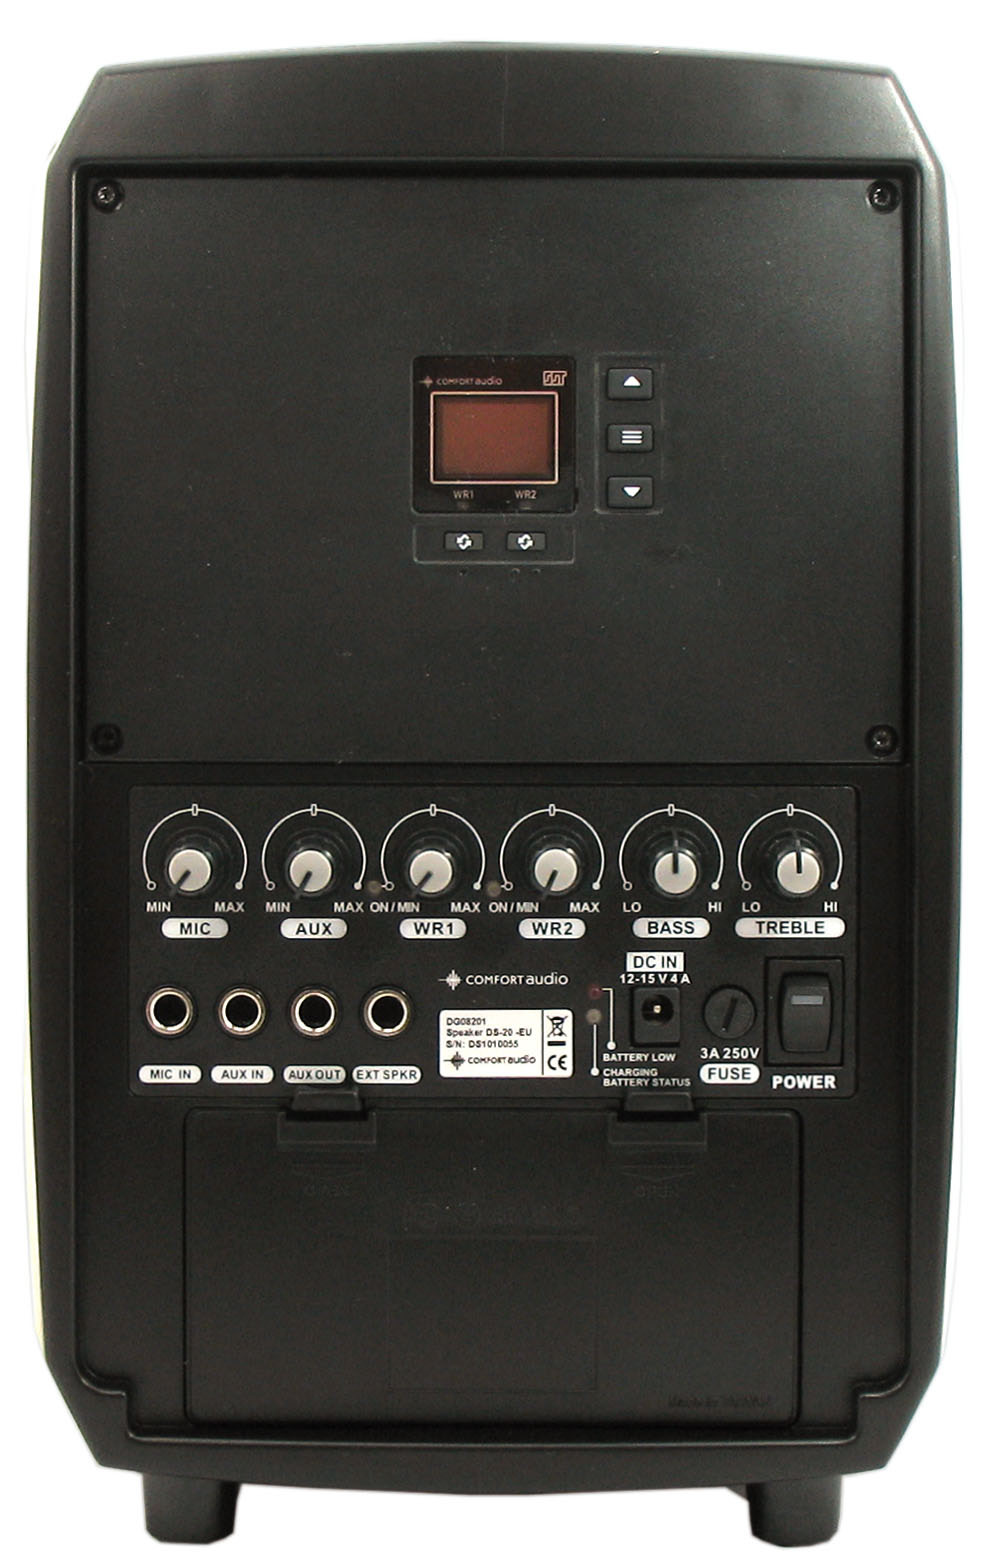 Funksjoner - Speaker DS10/DS20 Bærehåndtak Display Funksjonsindikatorer WR1 och WR2 Tilkoblingsknapper WR1 og WR2* MIC - Styrkekontroll til trådbundet mikrofon Mic in - for tilkobling av f. eks.